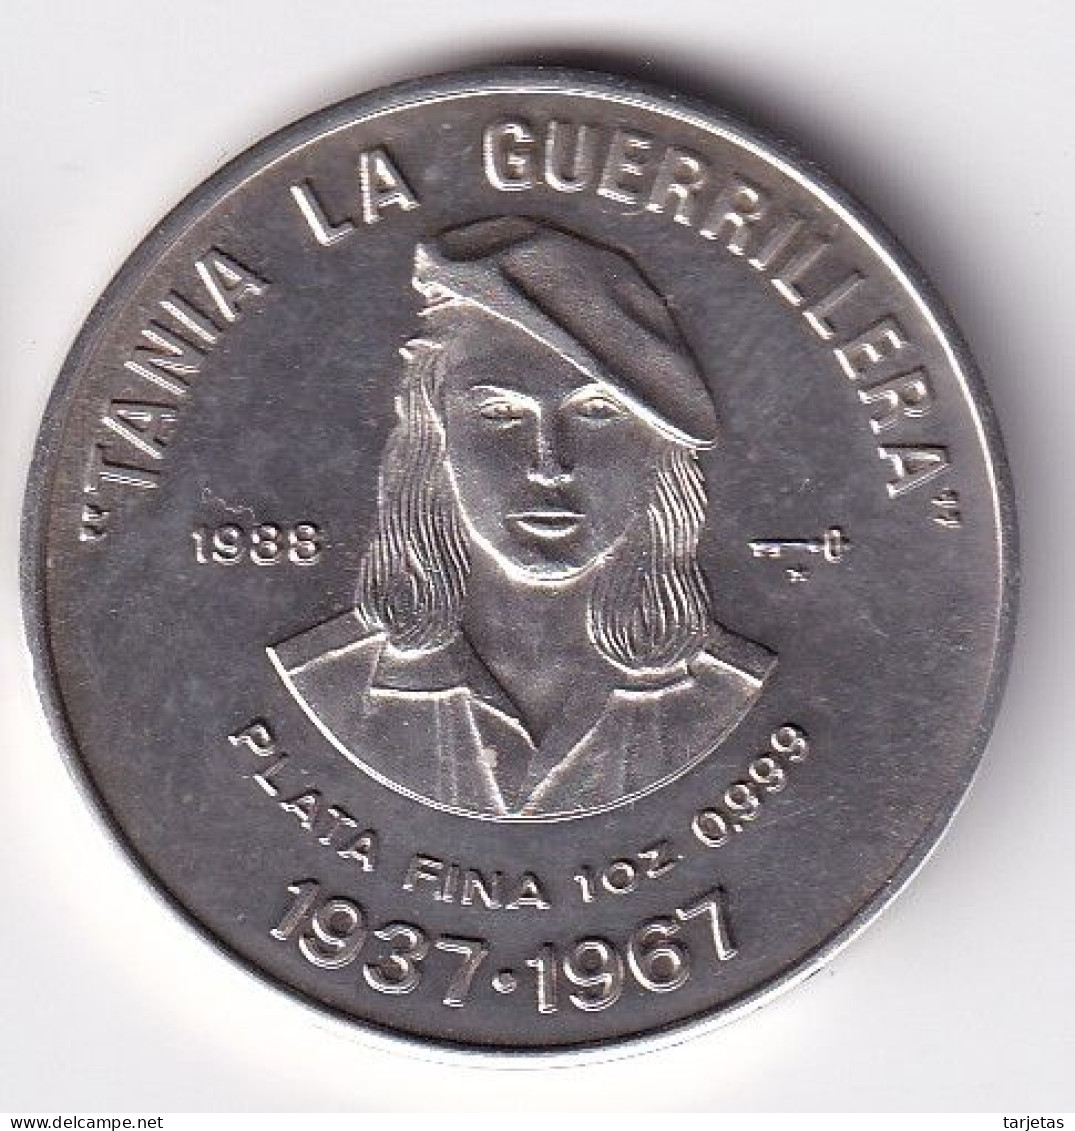 MONEDA DE PLATA DE CUBA DE 10 PESOS DEL AÑO 1988 DE TANIA LA GUERRILLERA (SILVER-ARGENT) - Kuba